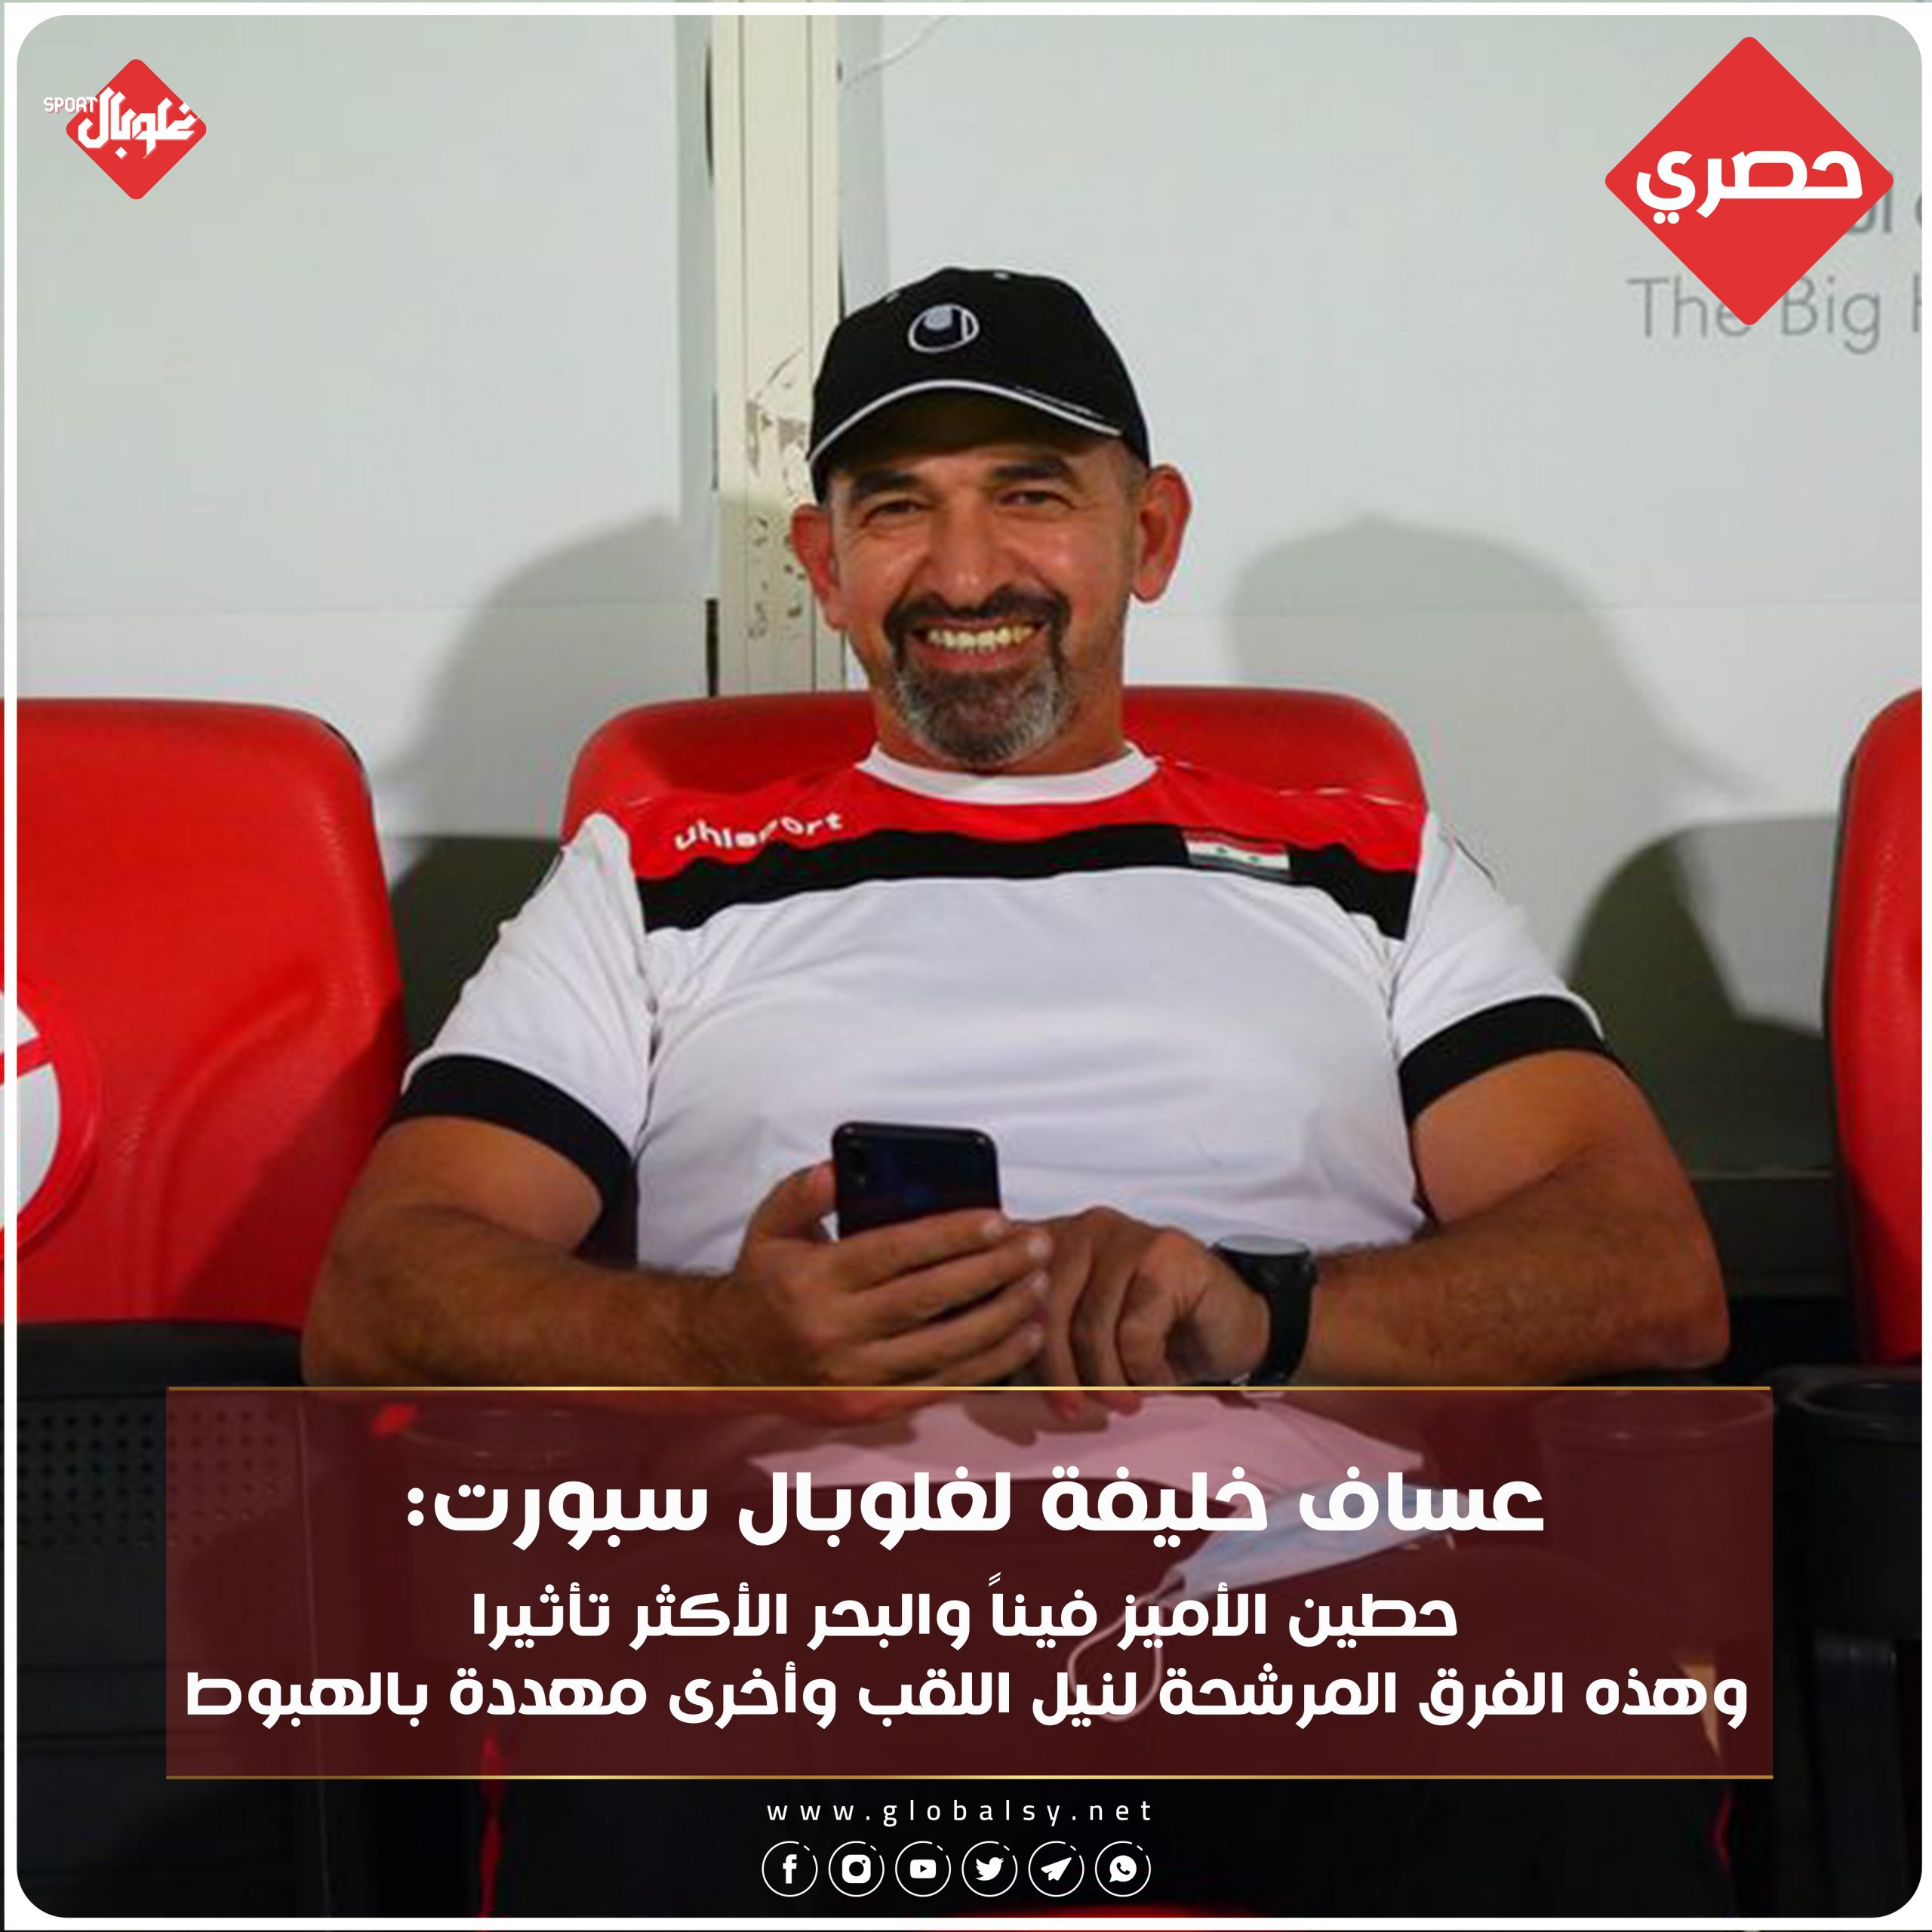 عساف خليفة يتحدث لغلوبال سبورت عن المرشحين للفوز بلقب الدوري السوري